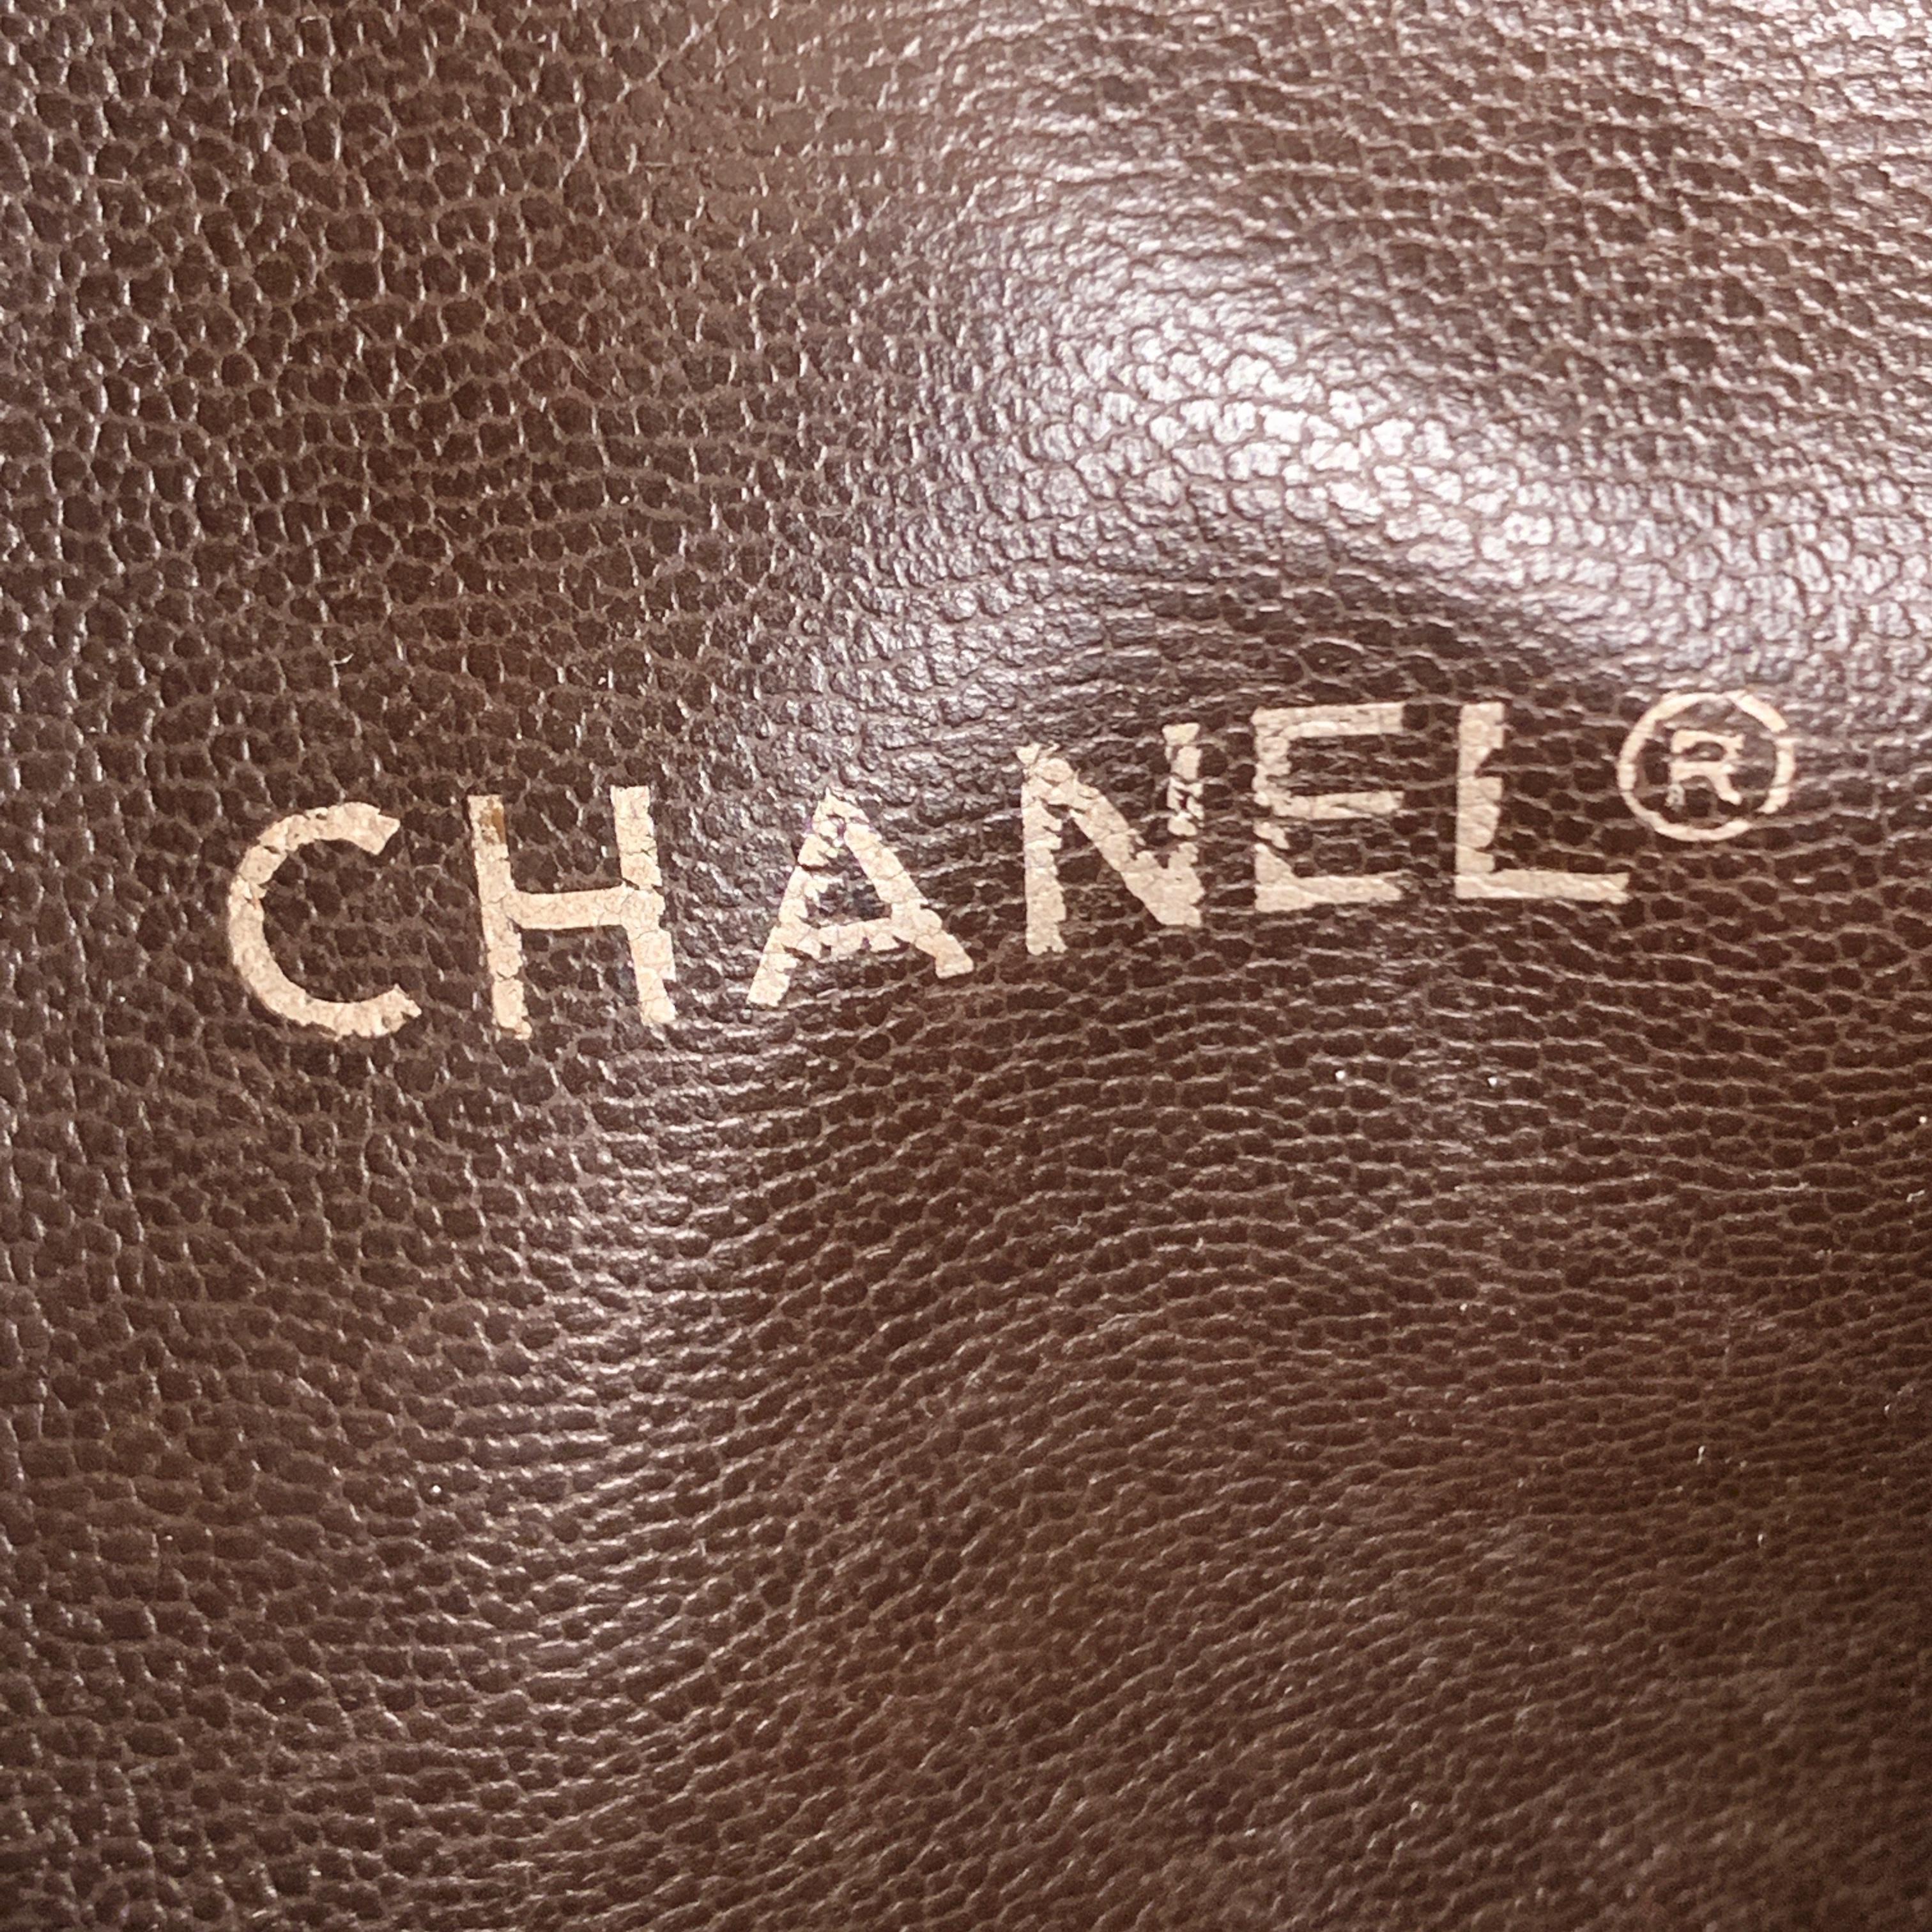 Chanel Vintage Brown Leather Shoulder Bag Tote Bottom Quilting 3